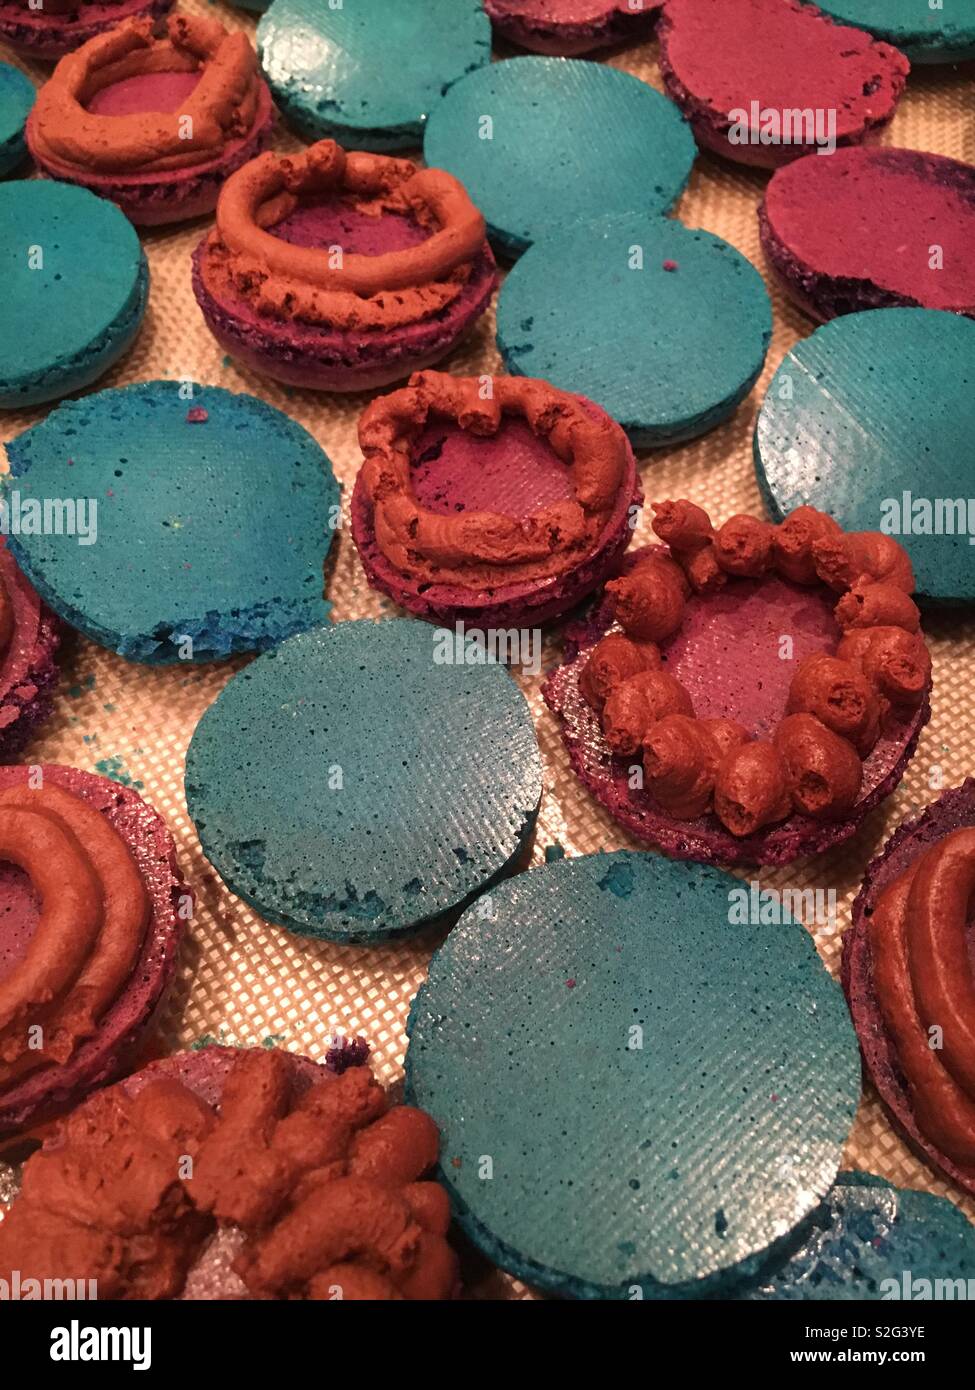 Blau und lila Macaron Cookies mit schokoladenfüllung wie gebackene und köstlichen Leckereien vorbereitet. Stockfoto